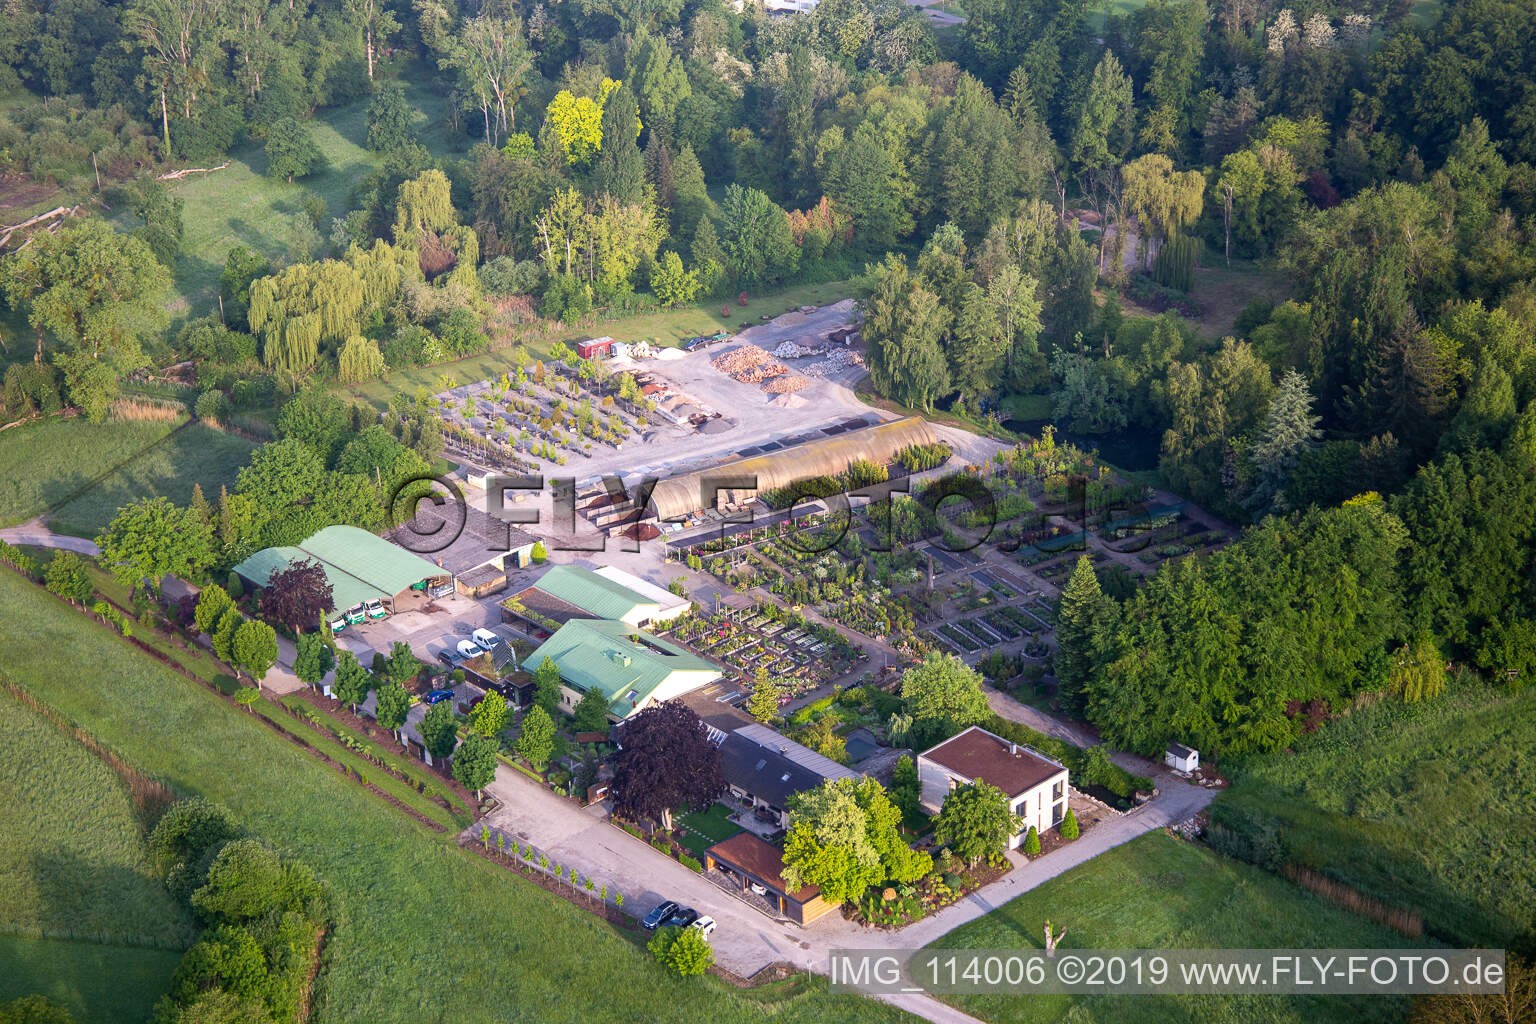 Bienwald Baumschule / Greentec in Berg im Bundesland Rheinland-Pfalz, Deutschland von oben